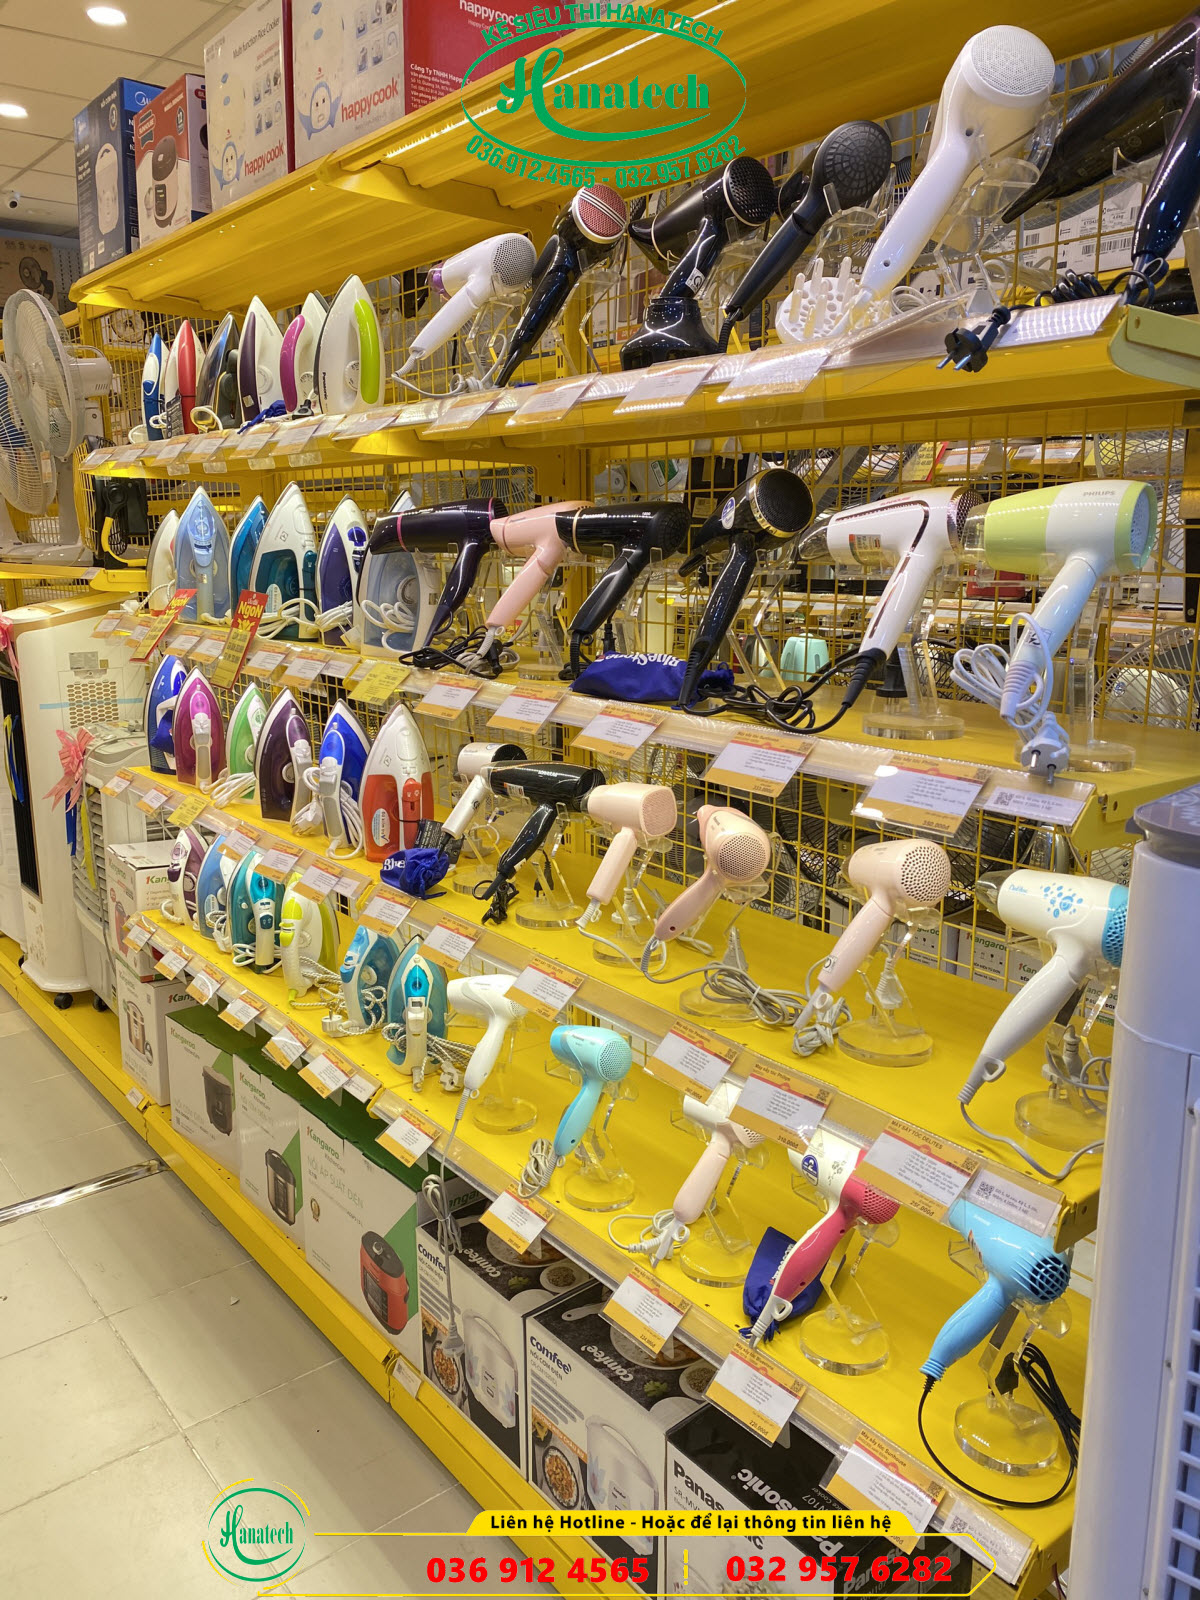 Giá kệ siêu thị trưng bày cho cửa hàng điện máy đồ gia dụng tại Tây Ninh